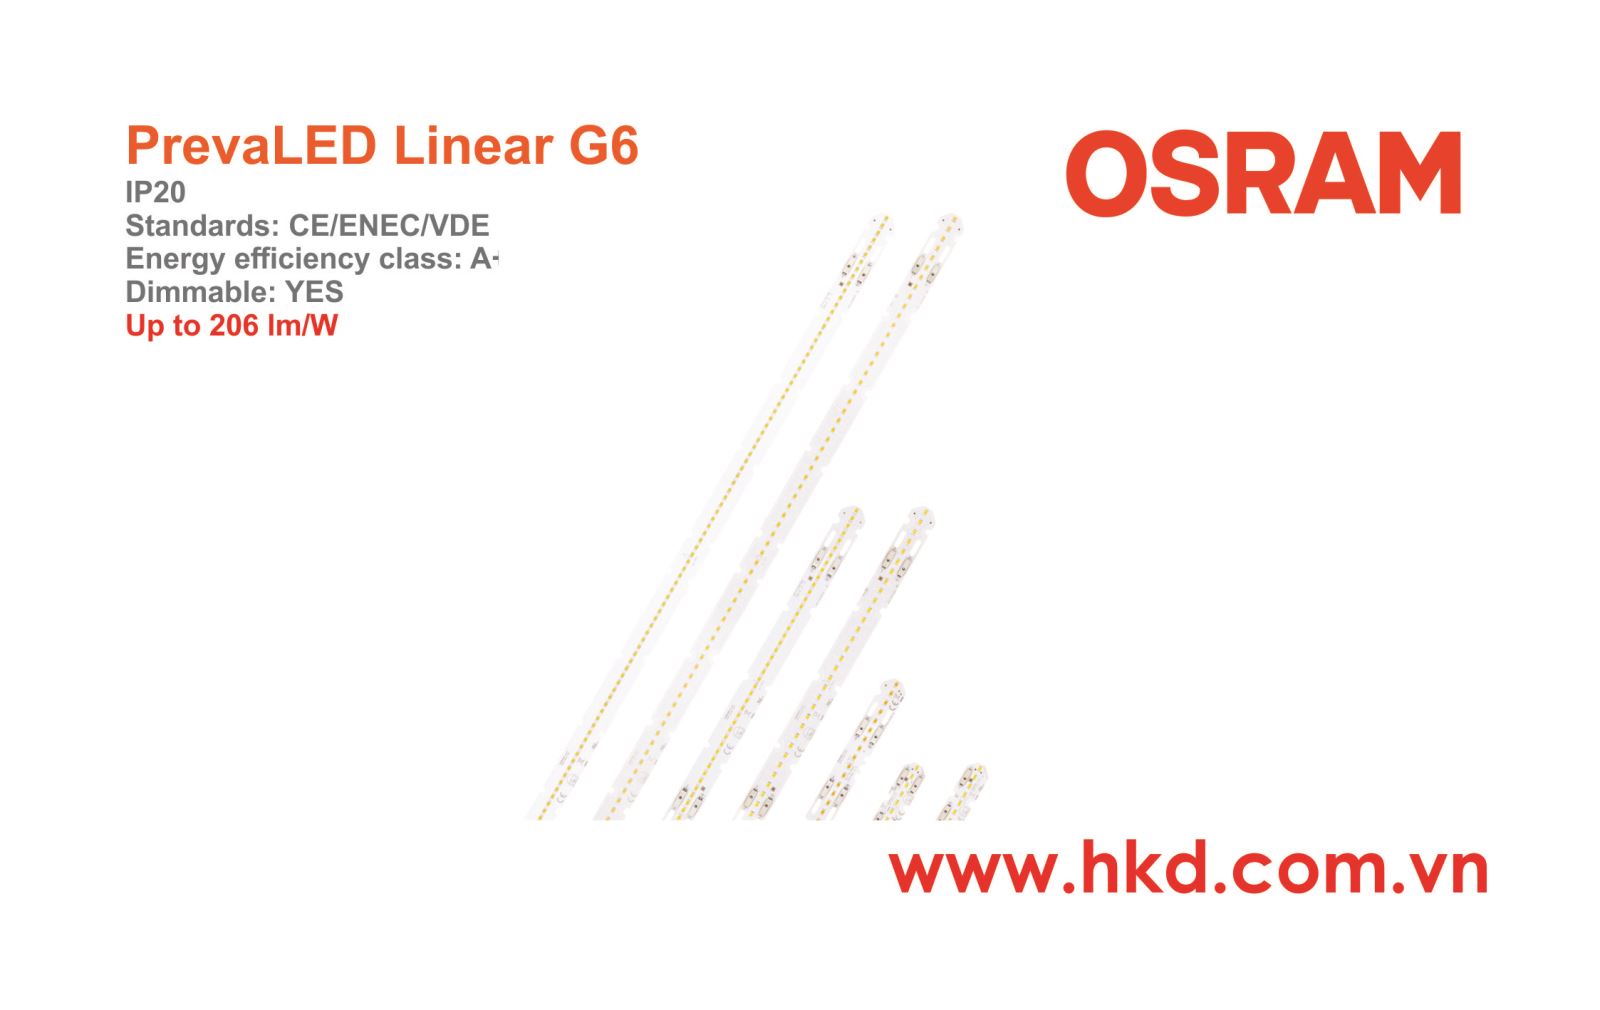 Đèn LED thanh PrevaLED Linear G6 OSRAM